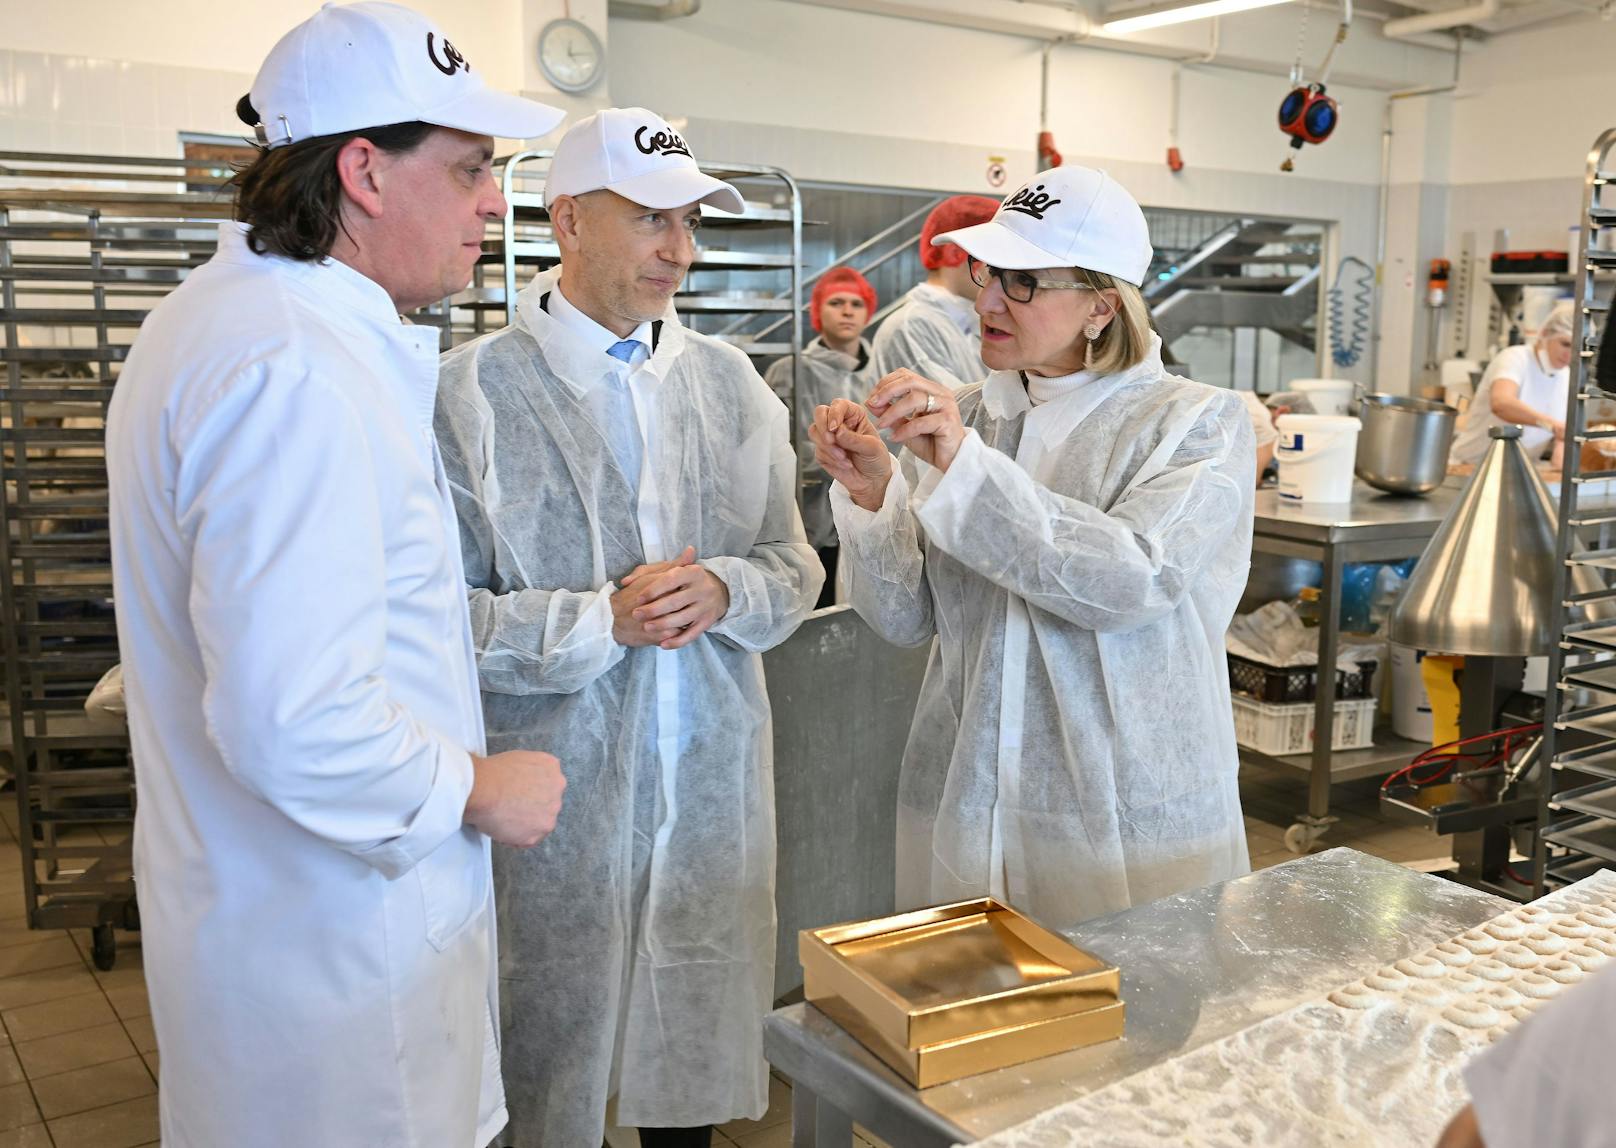 Landeshauptfrau Johanna Mikl-Leitner, Bundesminister Martin Kocher und Gerald Geier im Gespräch während der Betriebsführung durch die Produktionsstätte der Bäckerei Geier in Markgrafneusiedl.